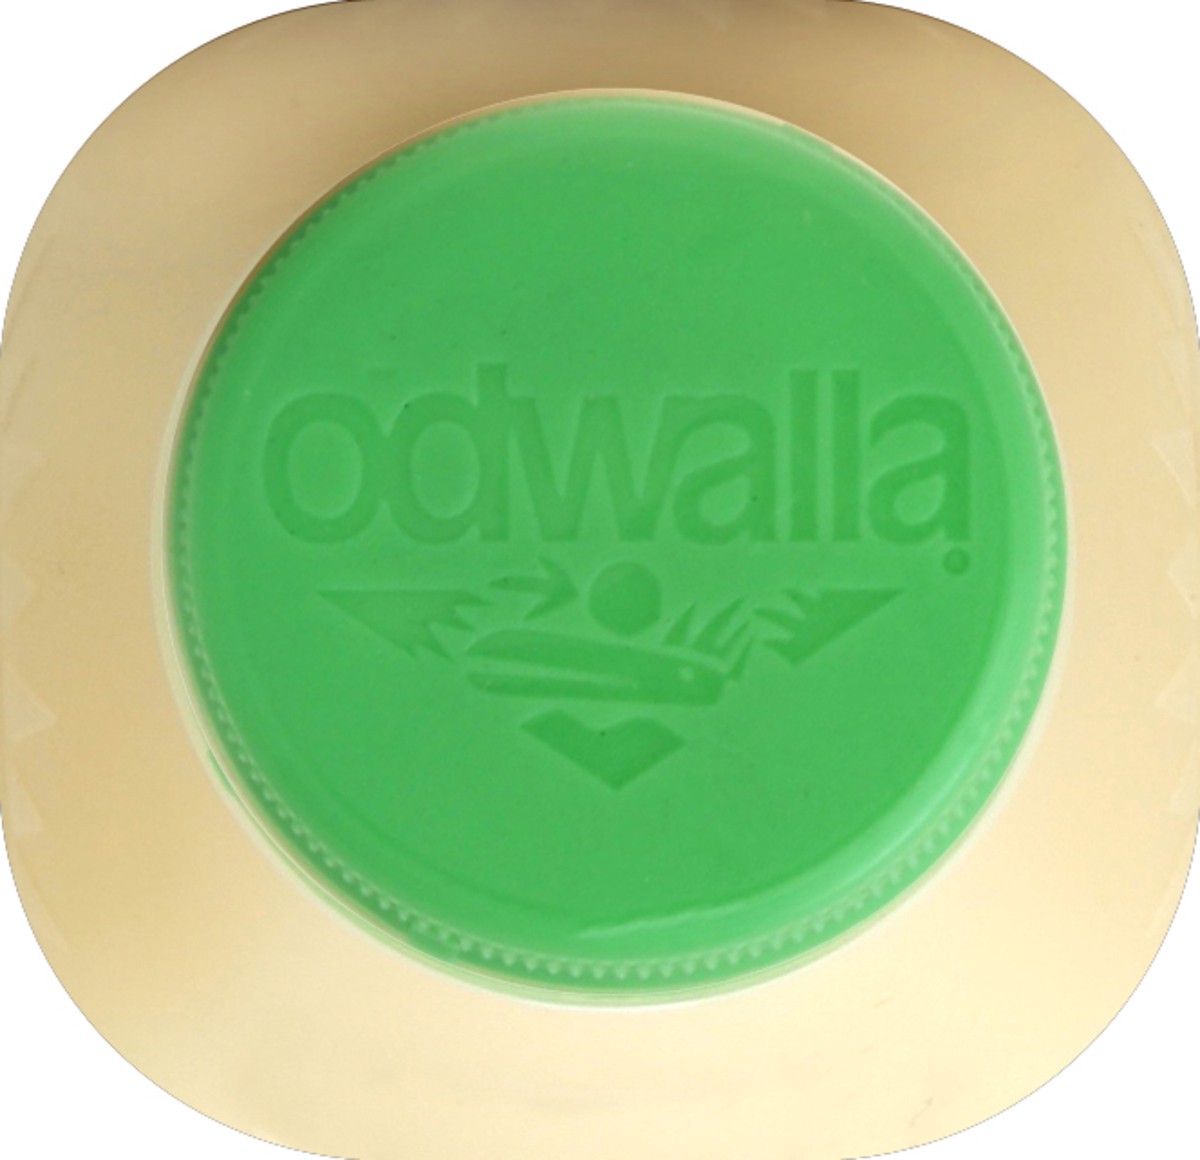 slide 2 of 4, Odwalla Super Protein Original Fruit Smoothie, 12 fl oz